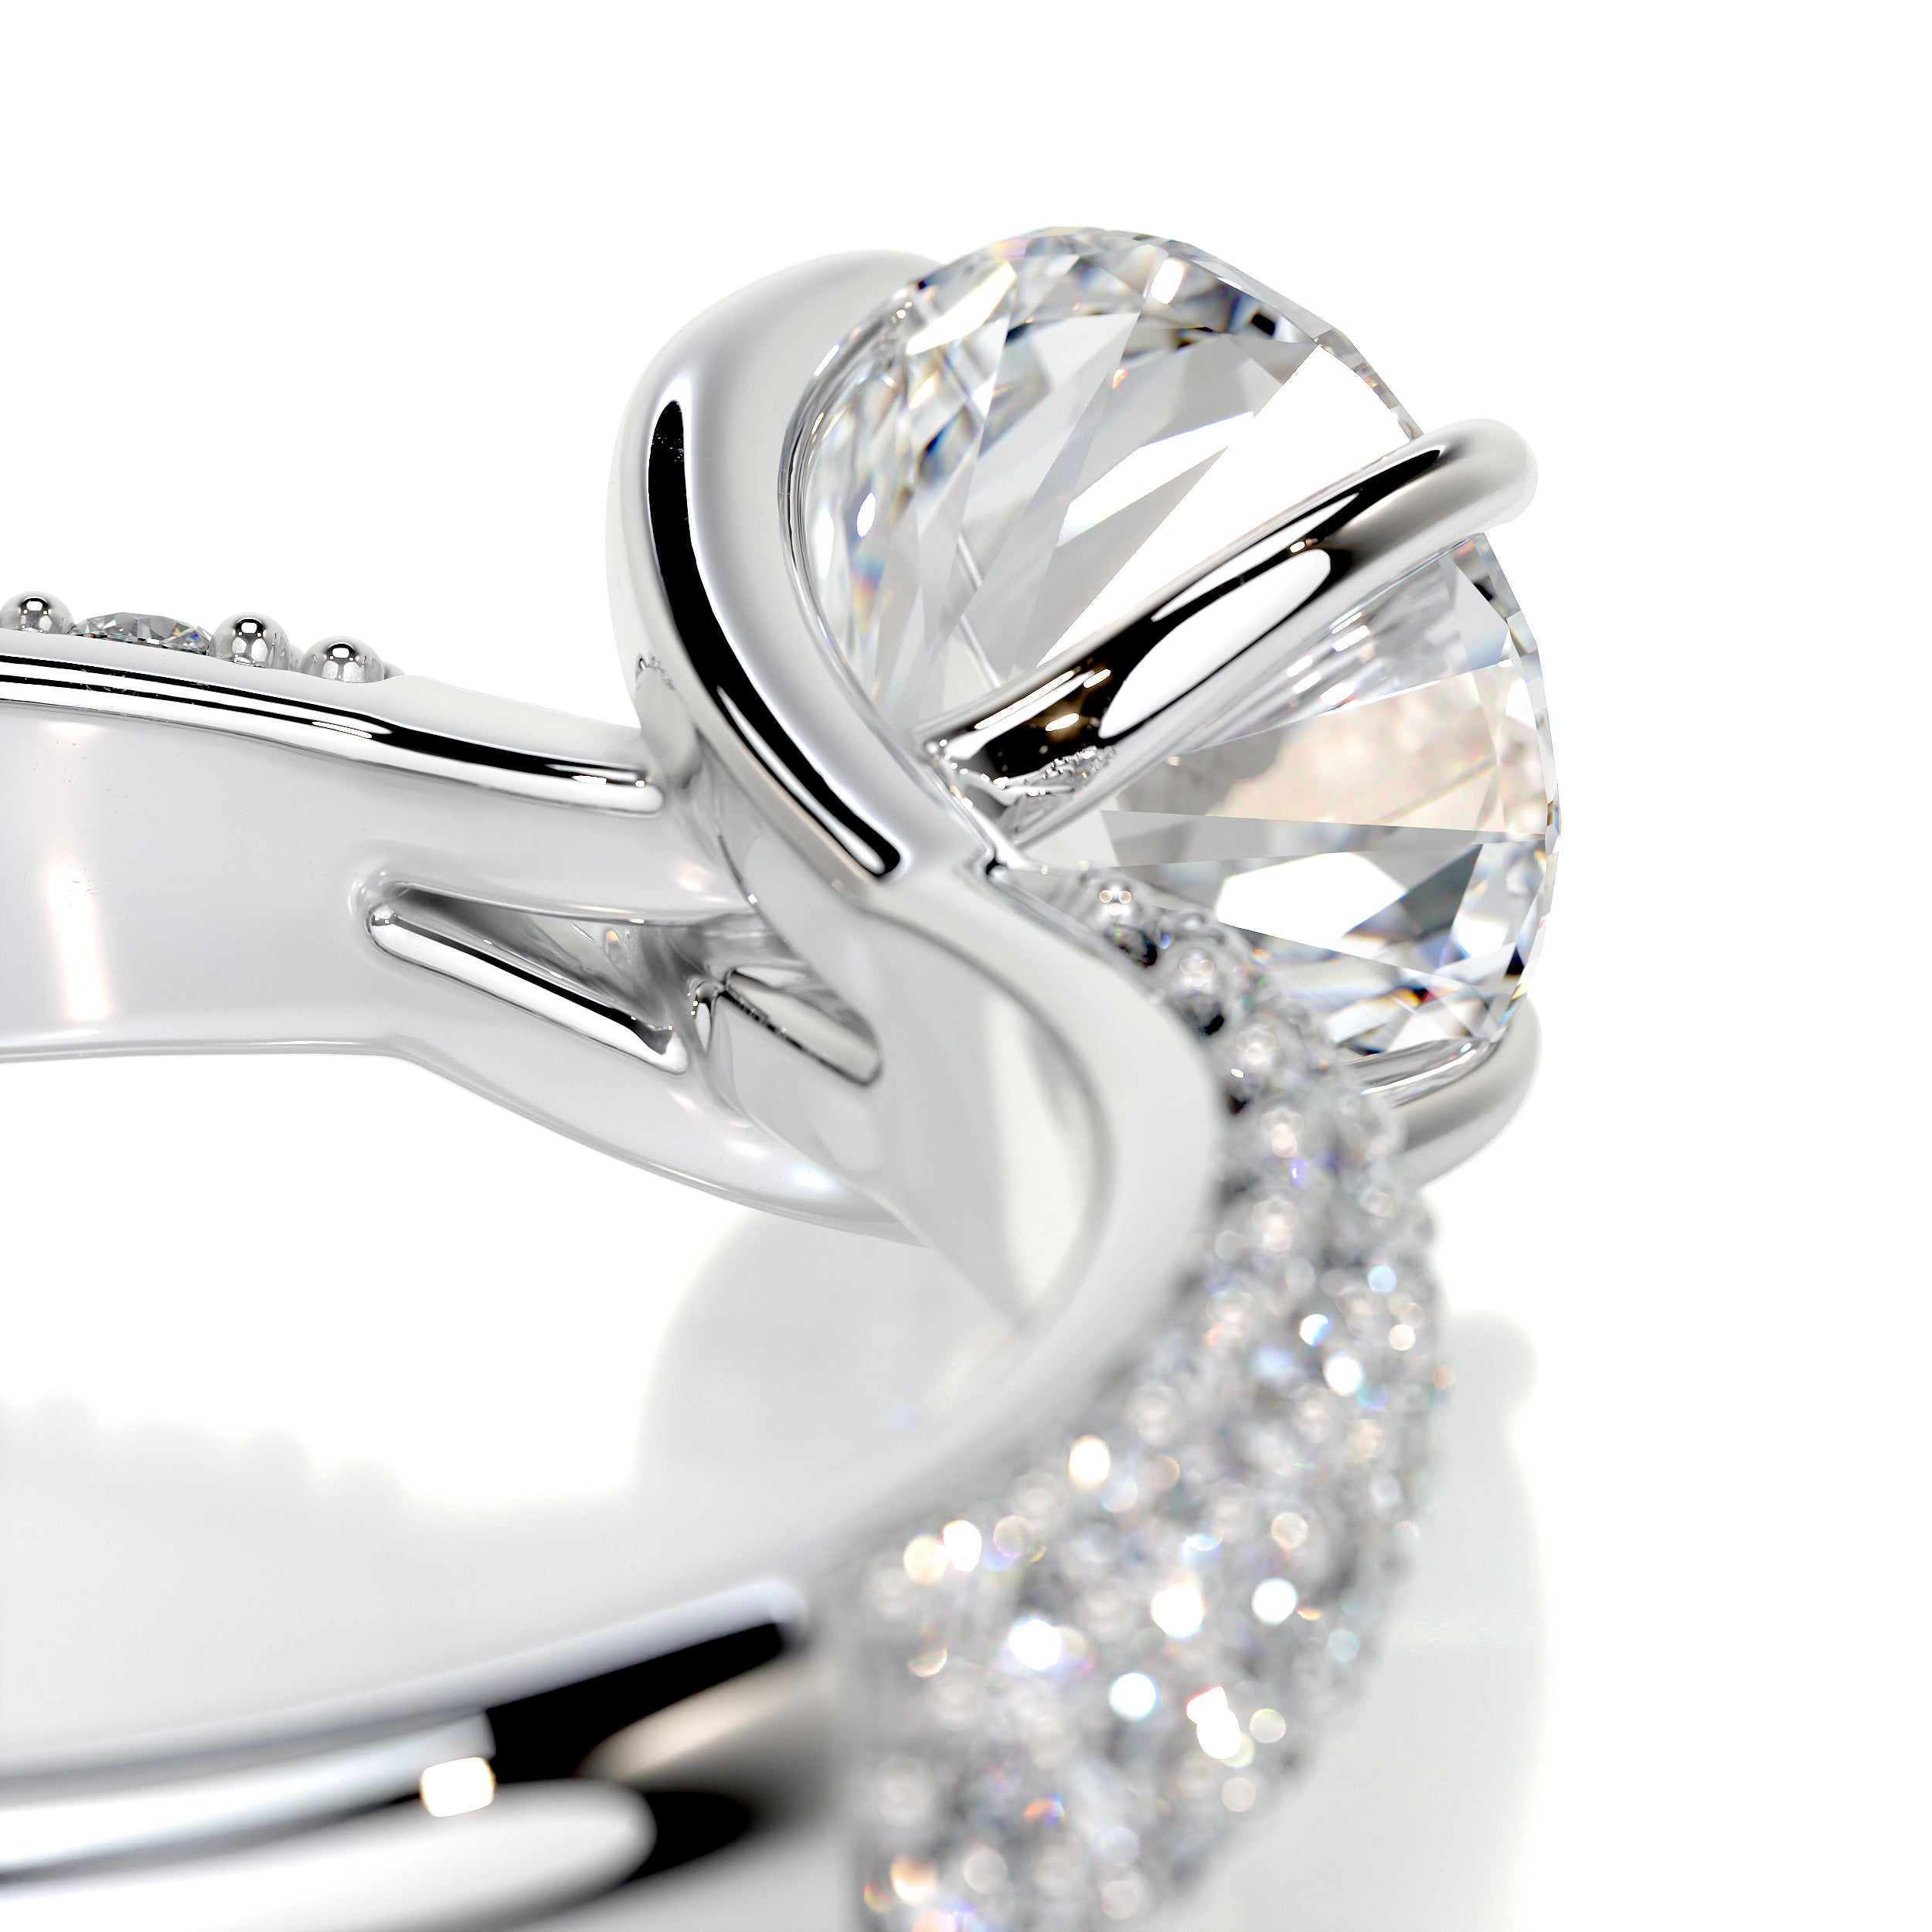 Alora Diamond Engagement Ring   (1.5 Carat) -14K White Gold